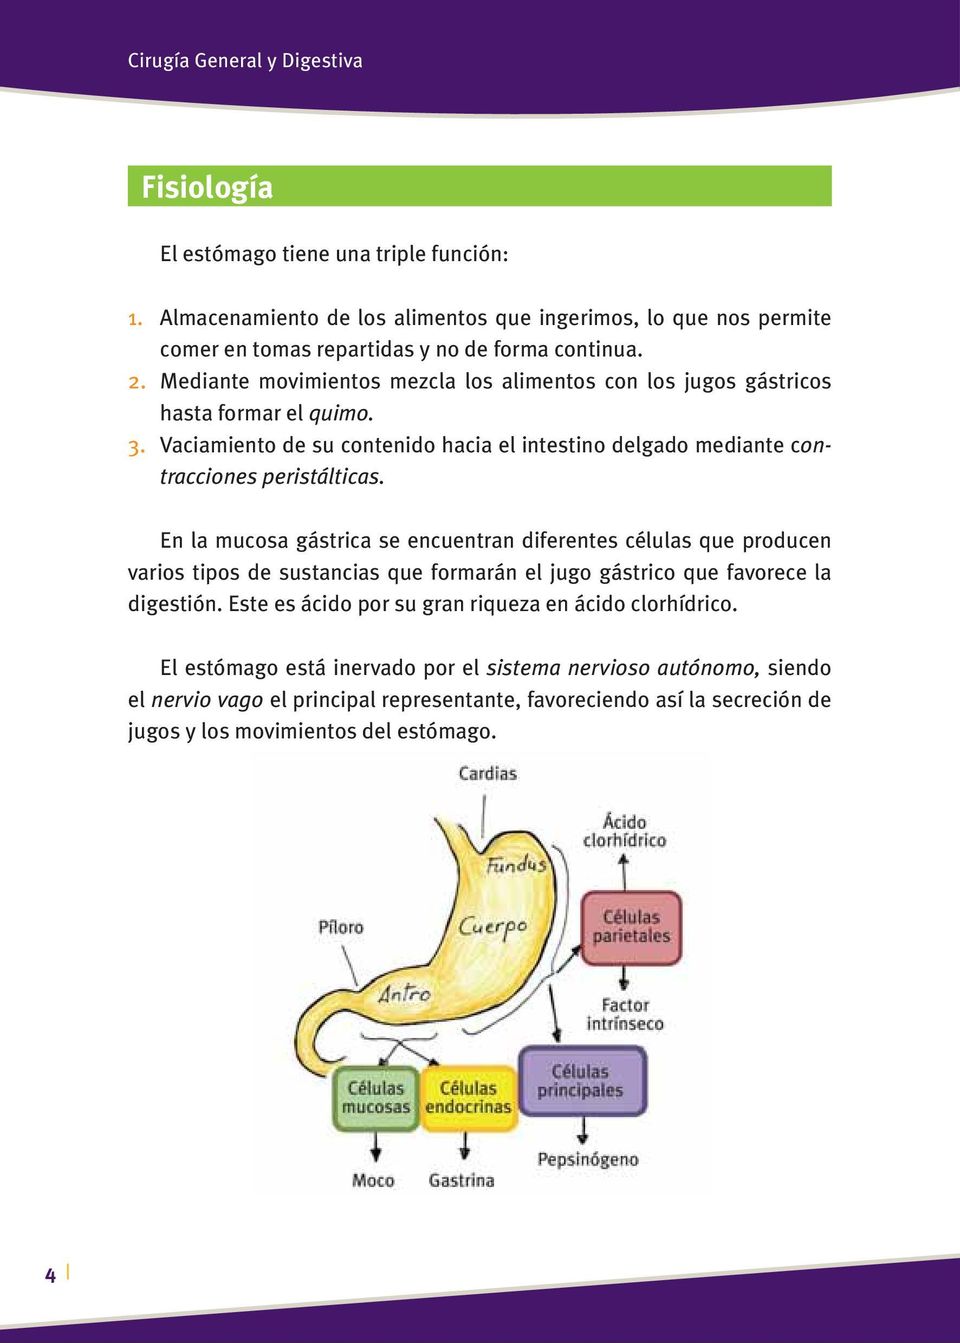 Mediante movimientos mezcla los alimentos con los jugos gástricos hasta formar el quimo. 3. Vaciamiento de su contenido hacia el intestino delgado mediante contracciones peristálticas.